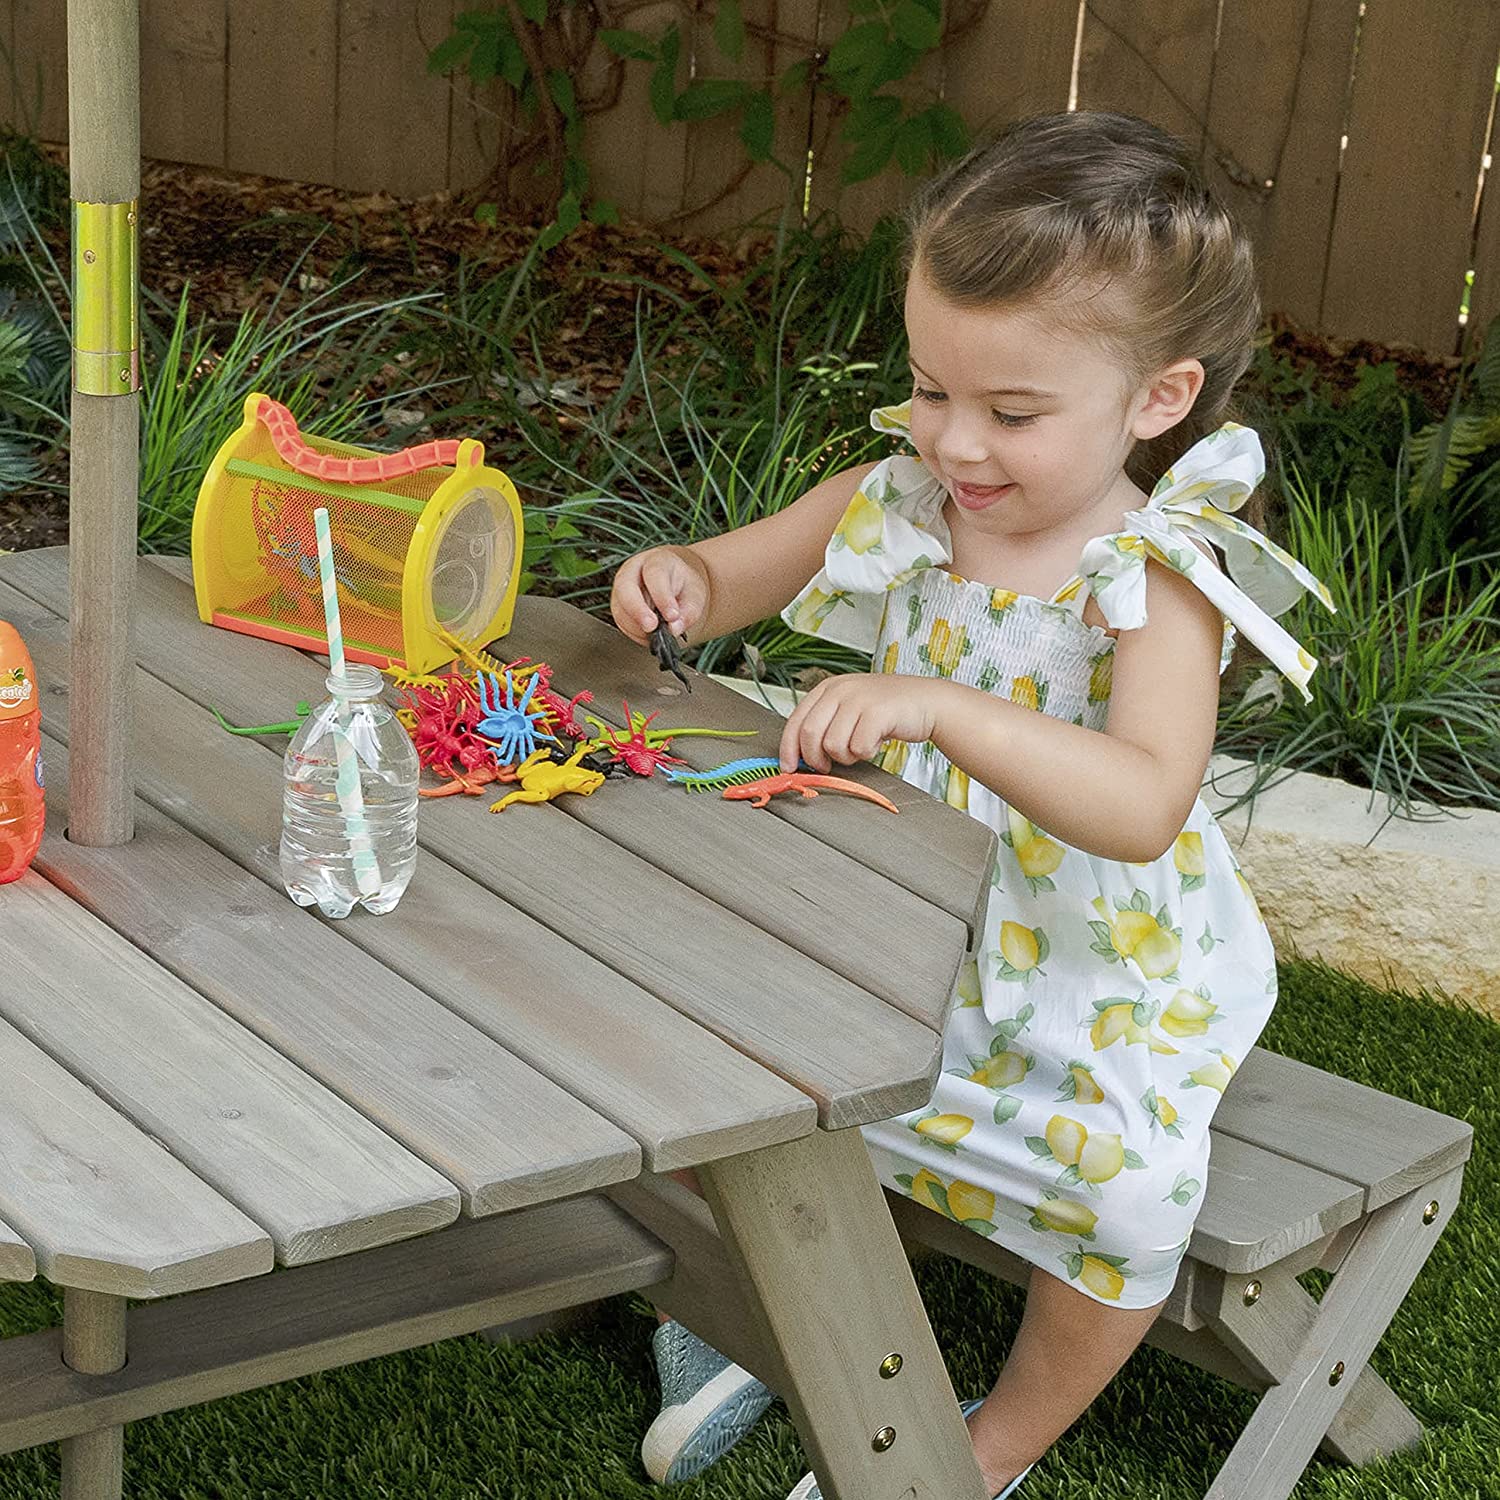 Детская садовая мебель: 4 скамьи, стол-пикник, зонт, цвет бежево-коричневый  